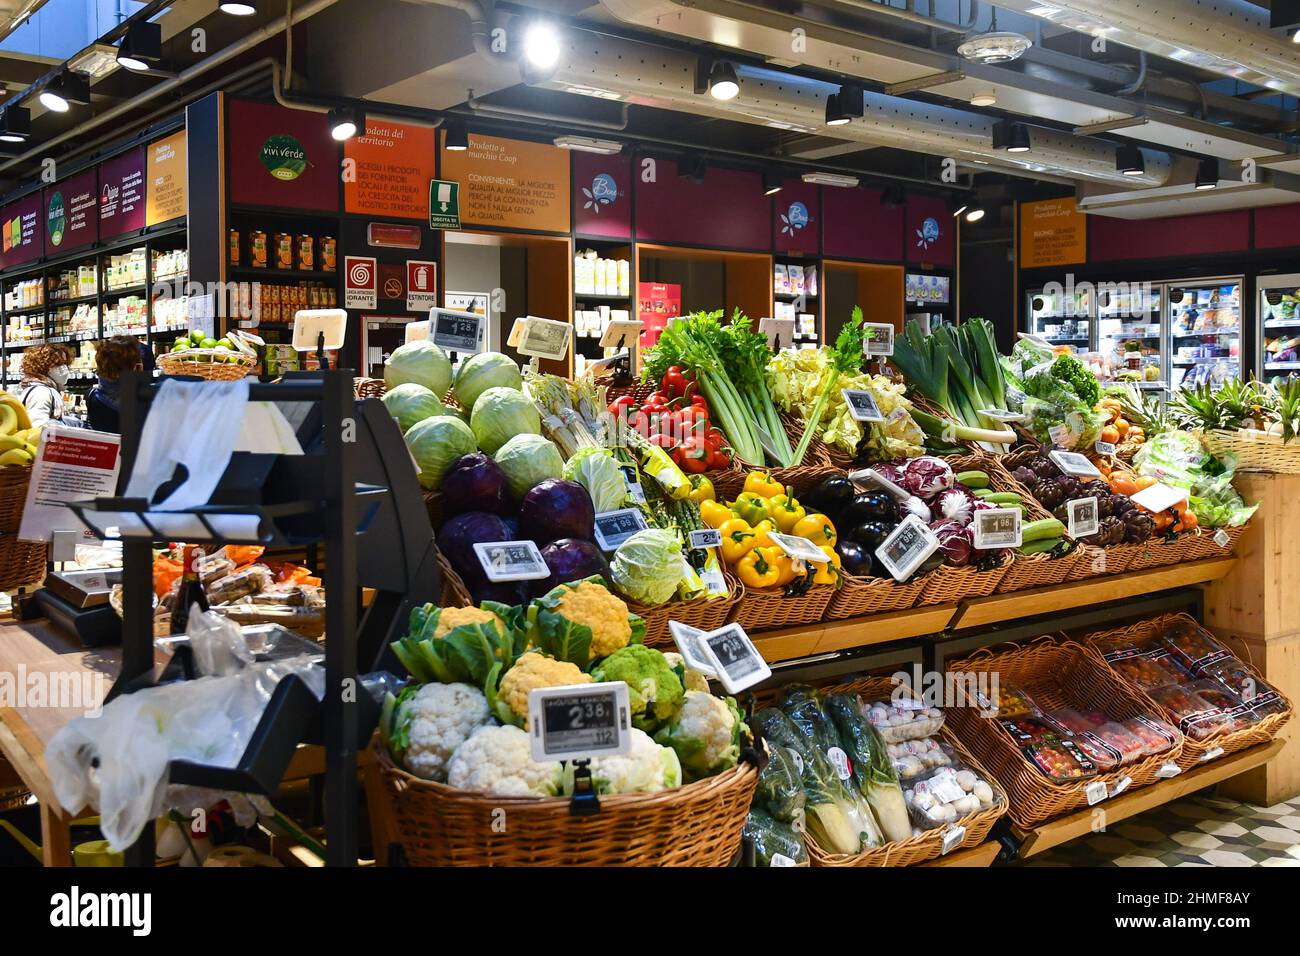 All'interno del negozio di alimentari Fiorfood Coop con frutta, verdura e prodotti tipici della Galleria San Federico, Torino, Piemonte, Italia Foto Stock